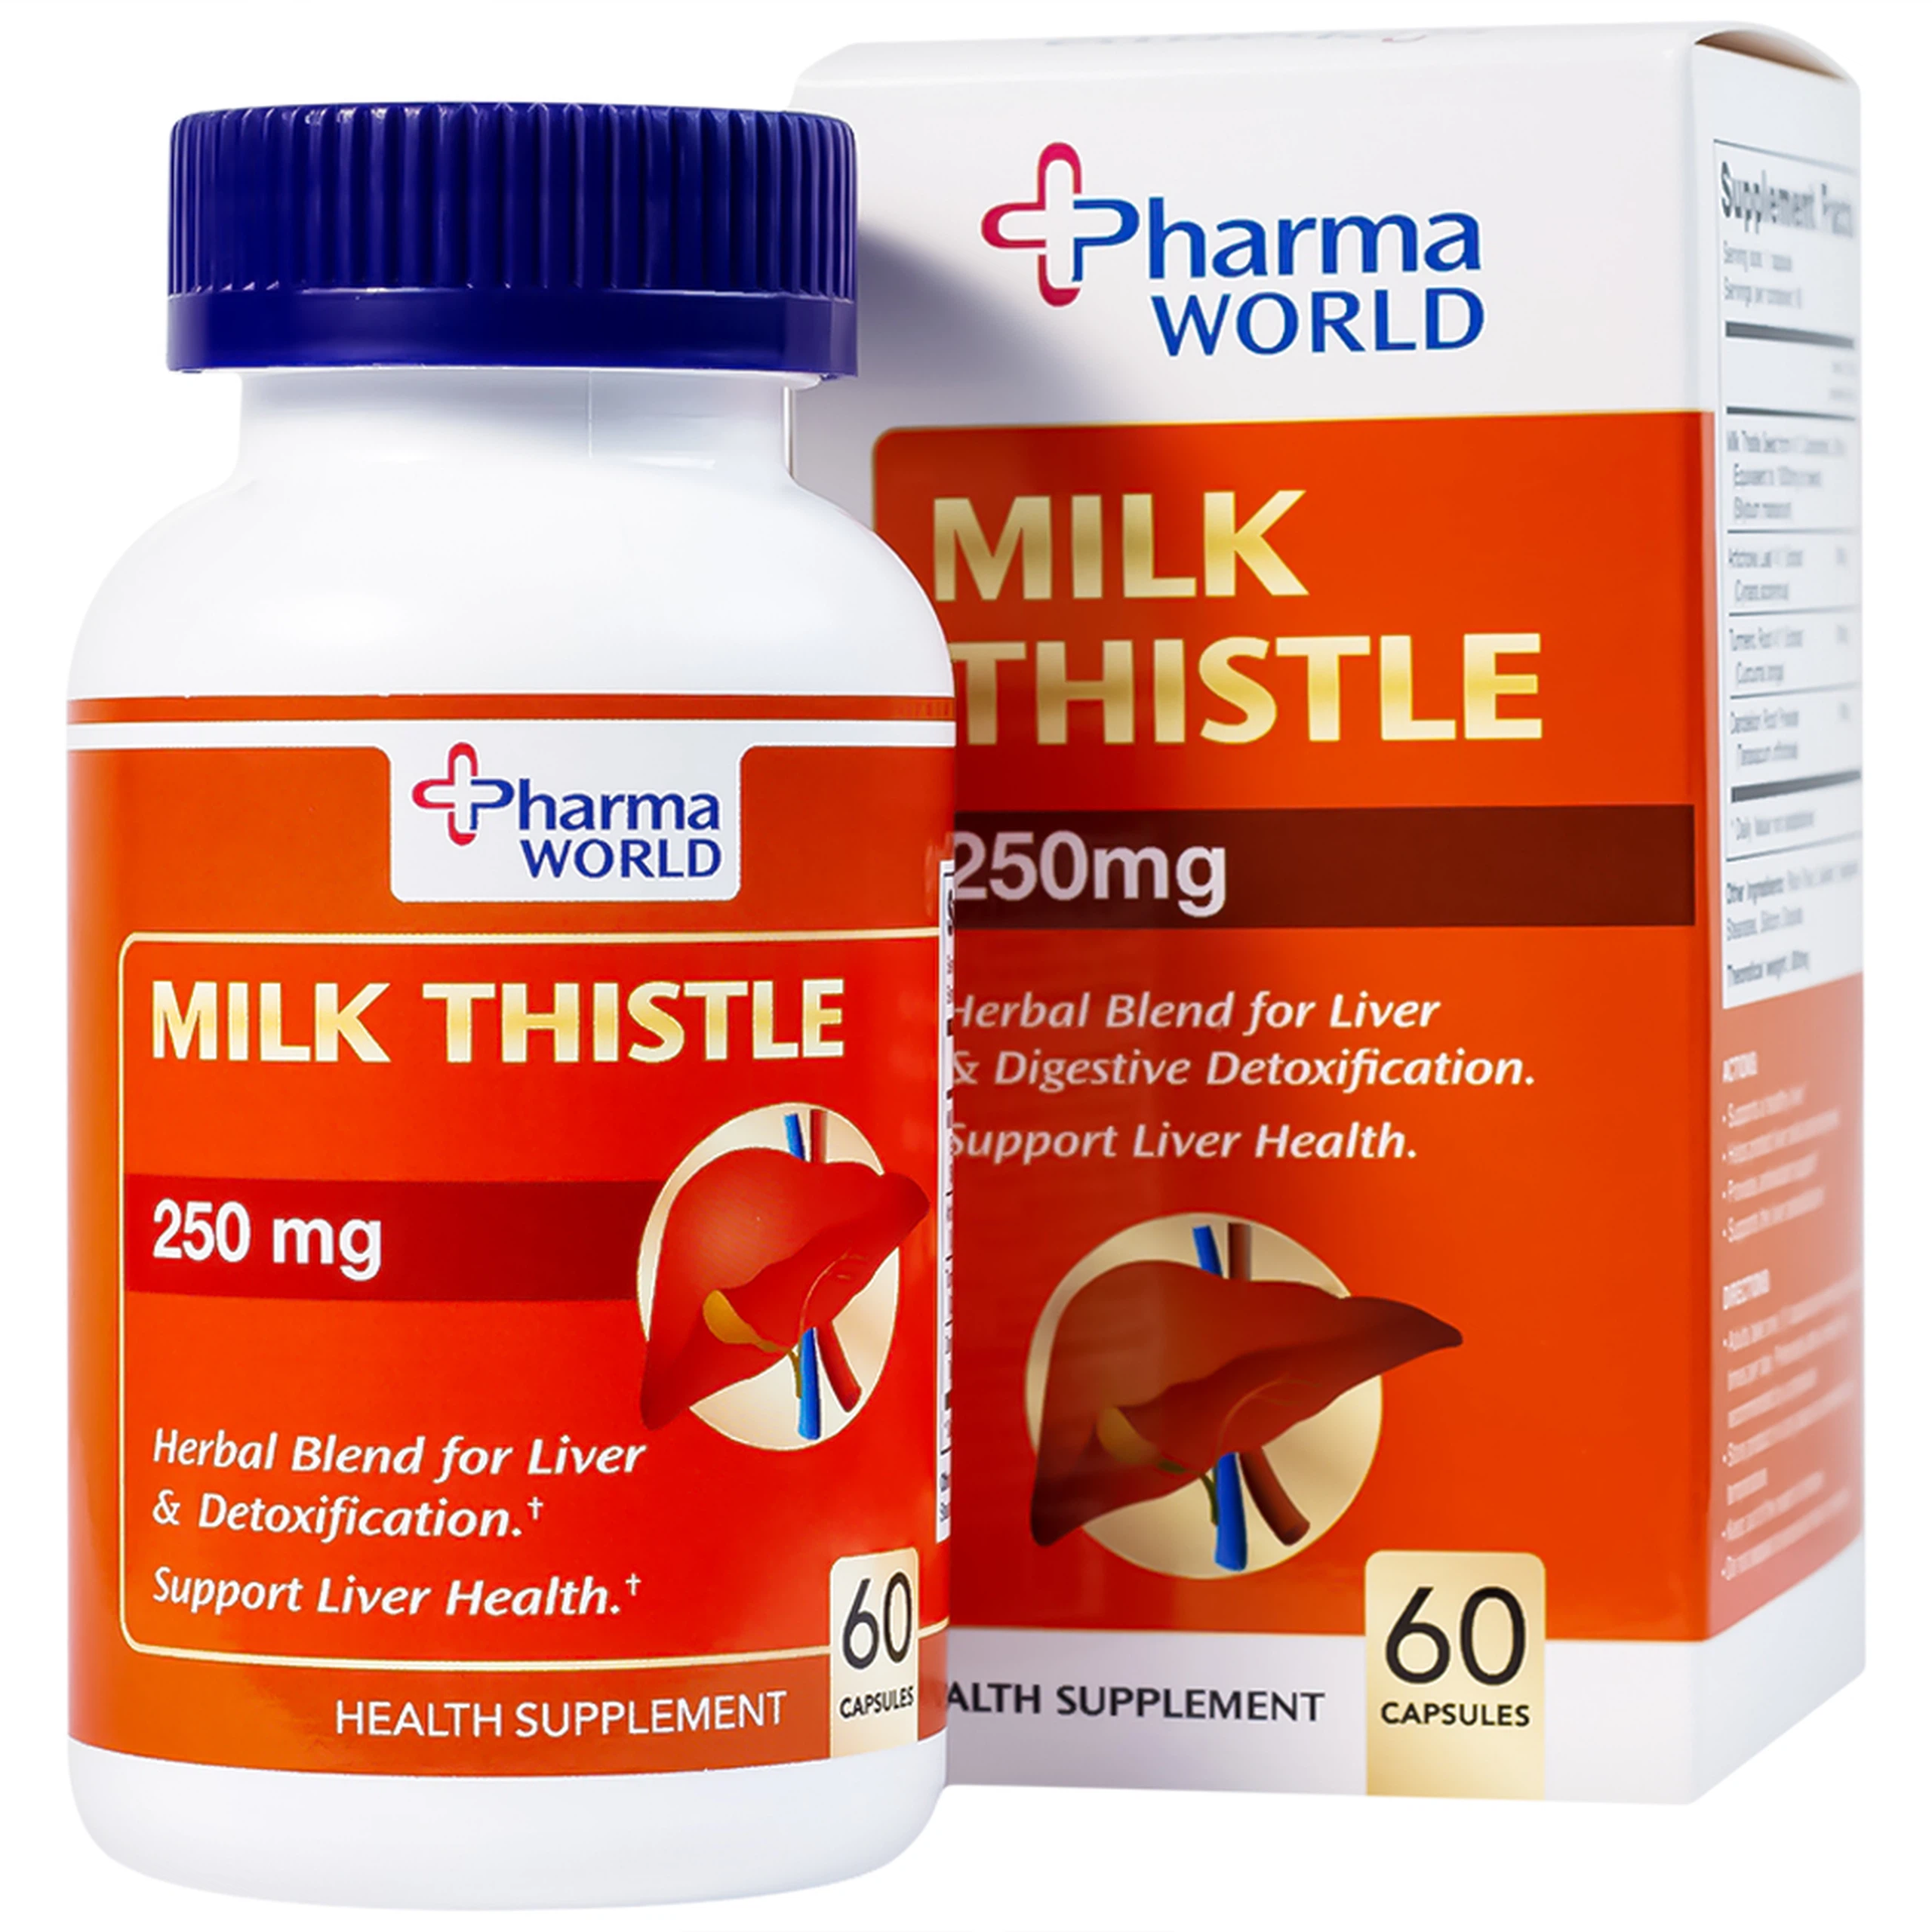 Viên uống Milk Thistle Pharma World hỗ trợ chống oxy hóa, giải độc gan (60 viên)